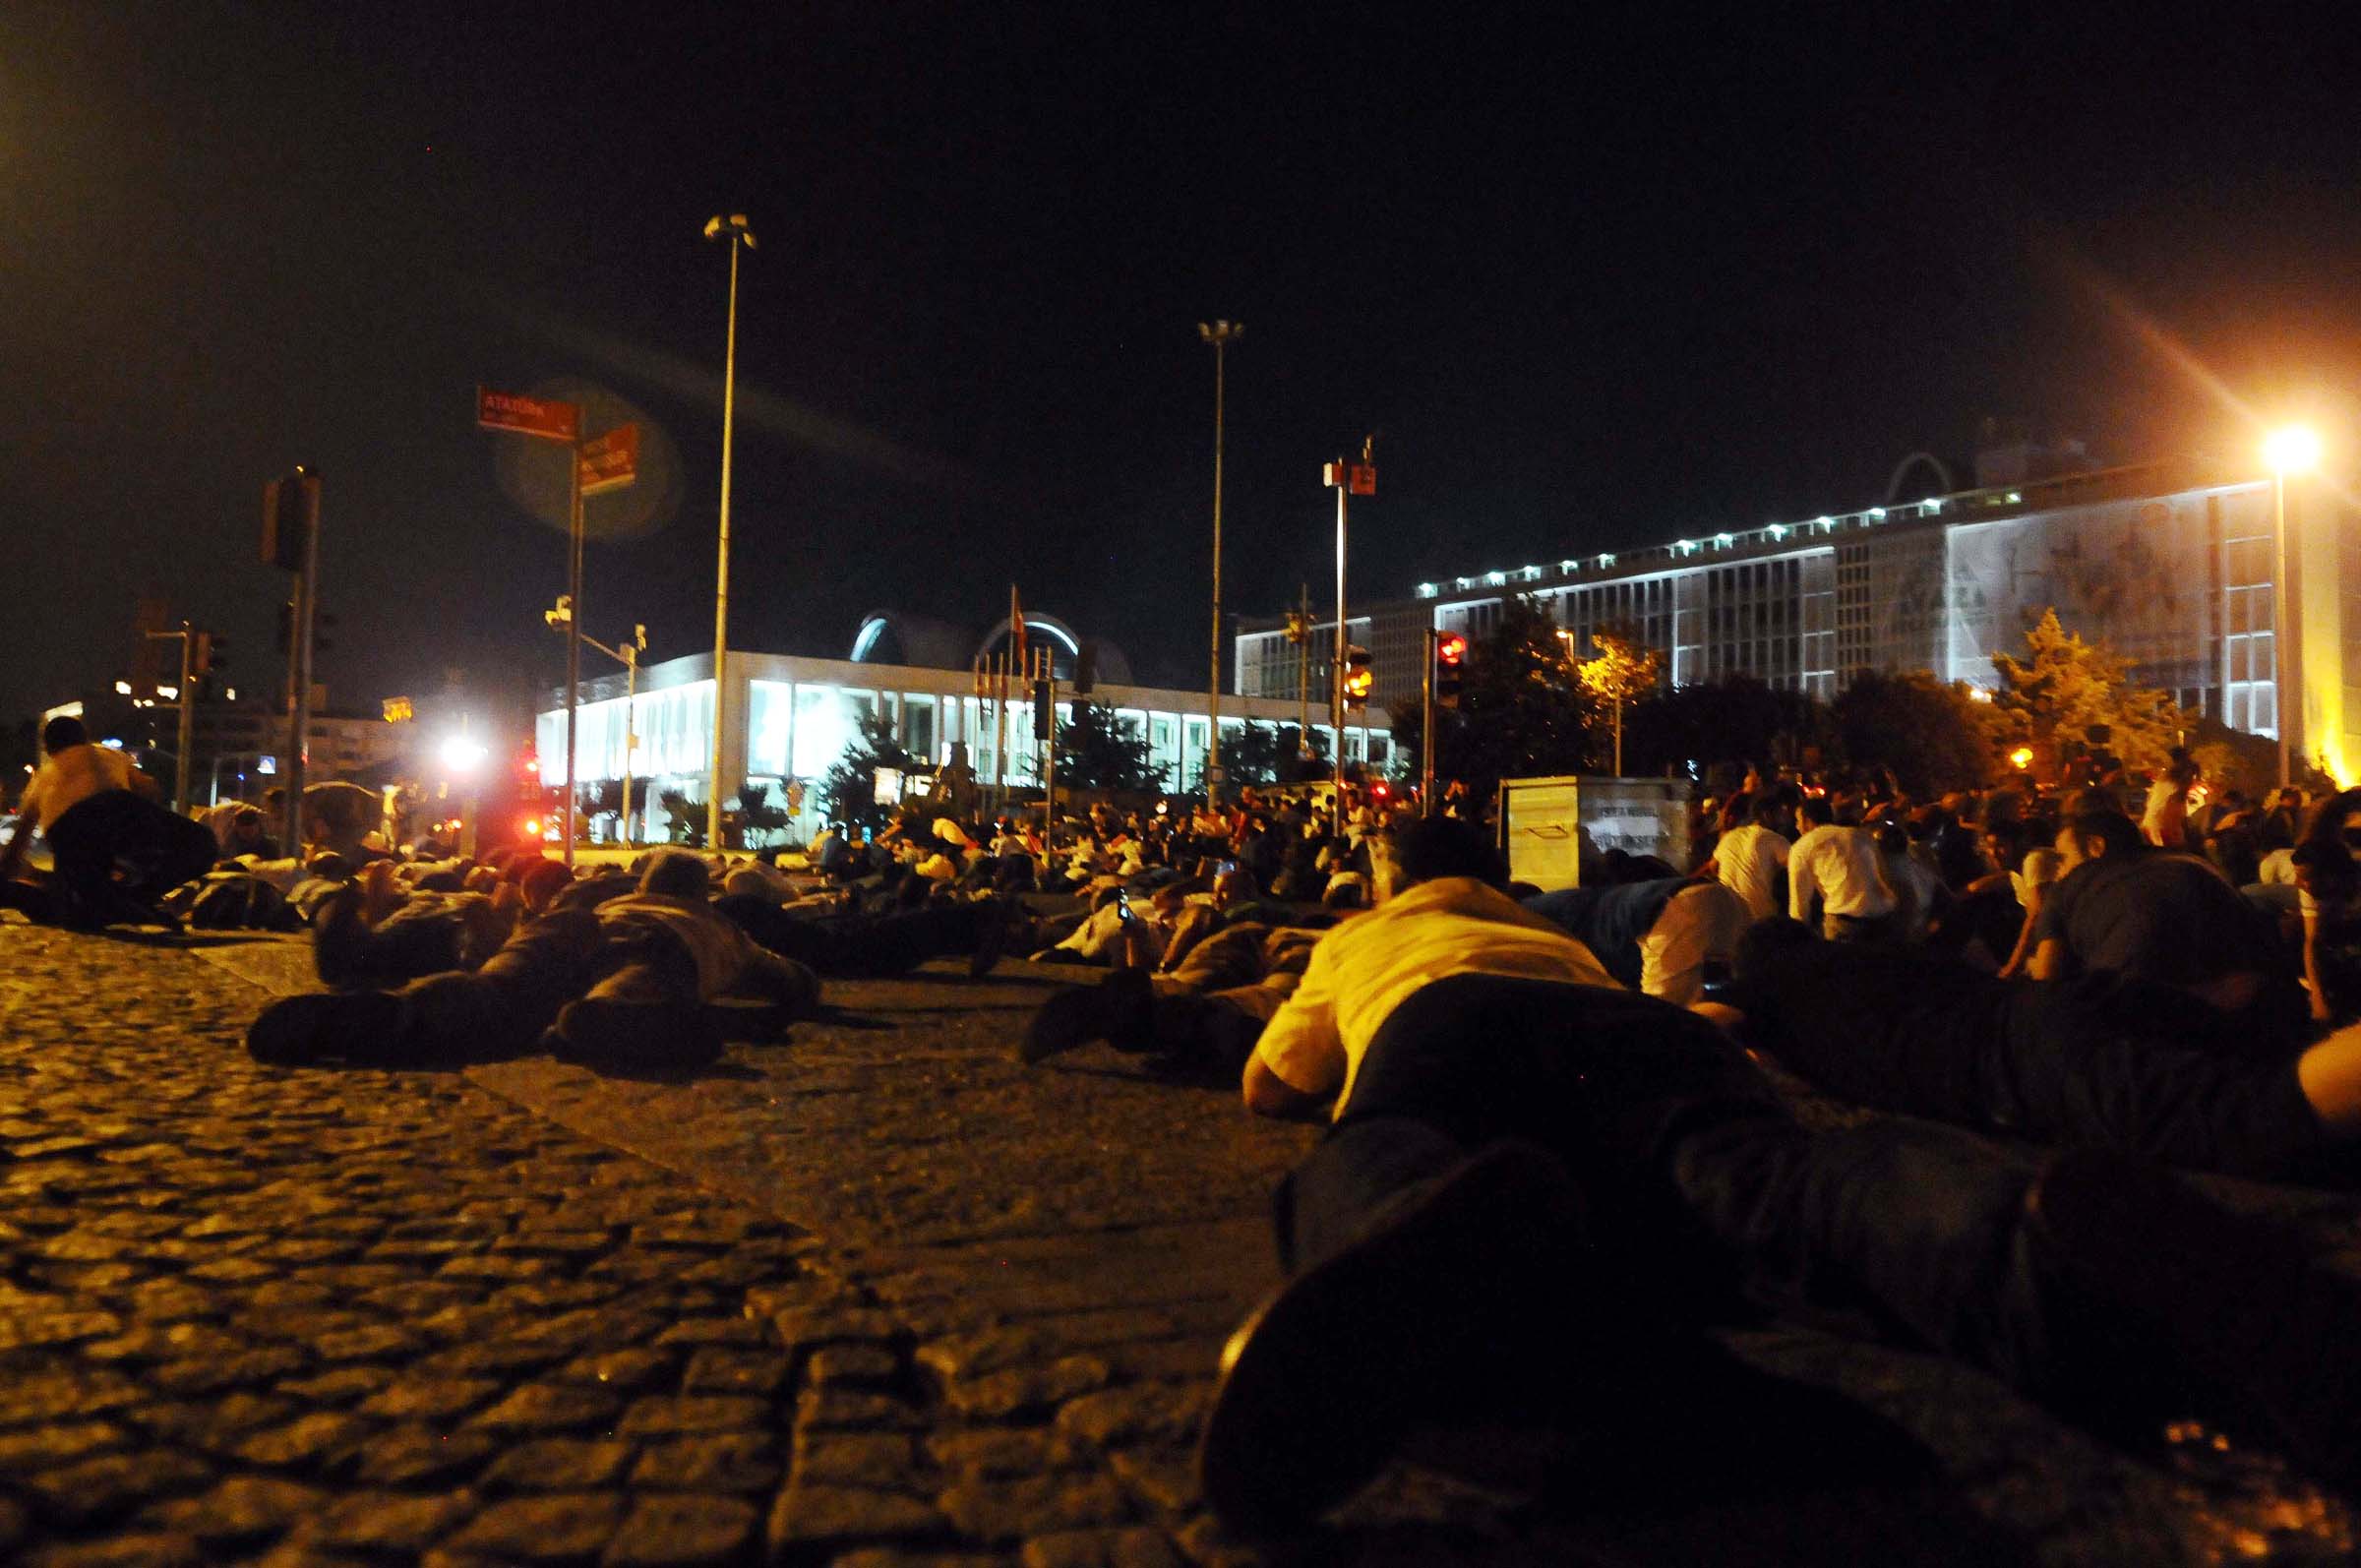 انبطح أفراد الشعب أرضًا للإحتماء من إطلاق النيران بعد أن فتح الجنود الانقلابيون النار عليهم أمام مبنى البلدية إسطنبول الكبرى حيث شهد المكان أحد أعنف الإشتباكات في إسطنبول.